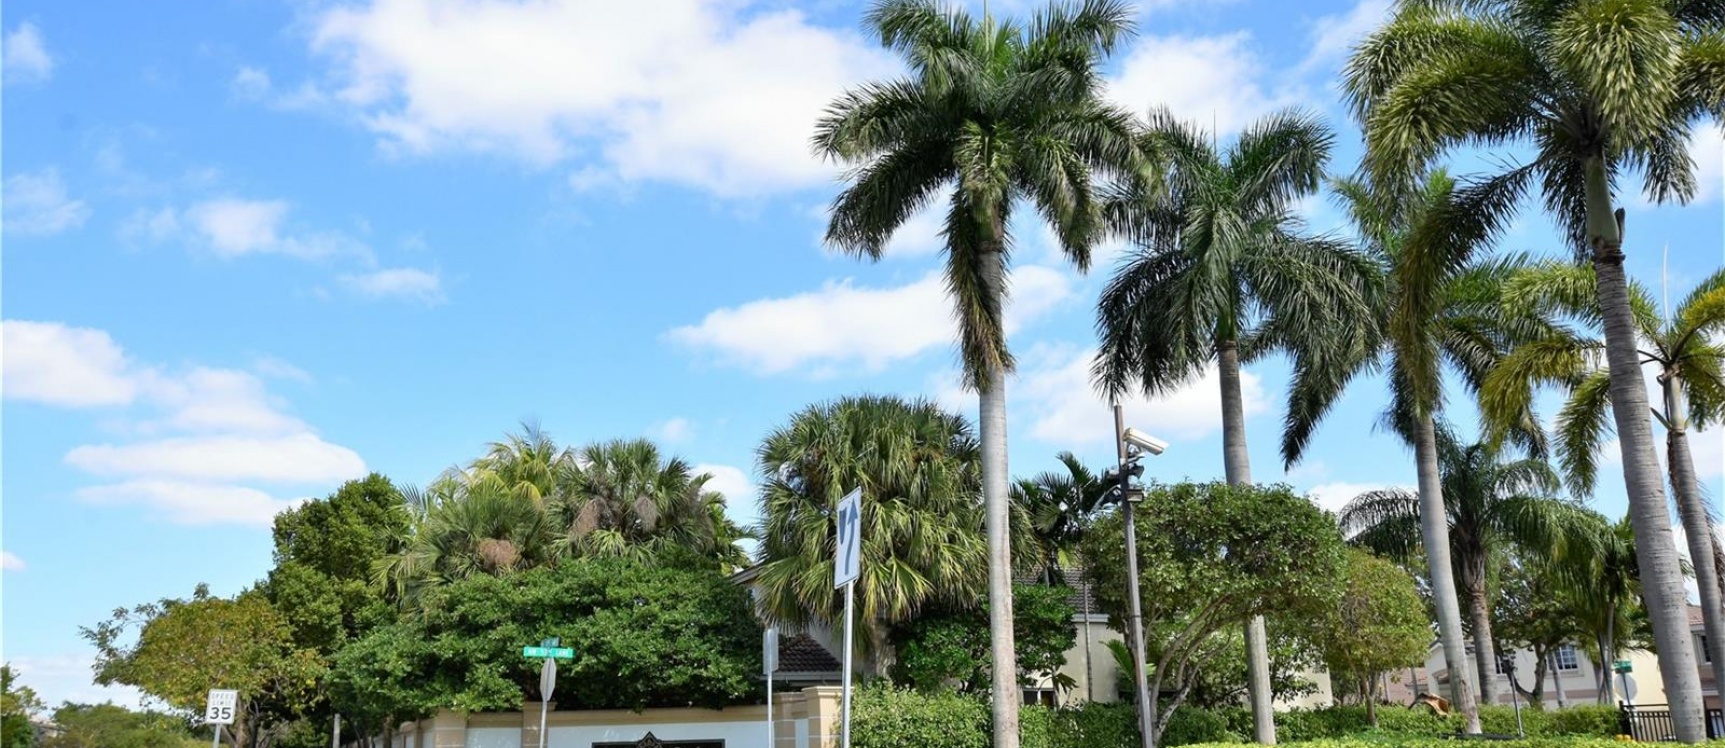 GeoBienes - Casa a la Venta en Miami - Doral Gardens - Plusvalia Guayaquil Casas de venta y alquiler Inmobiliaria Ecuador